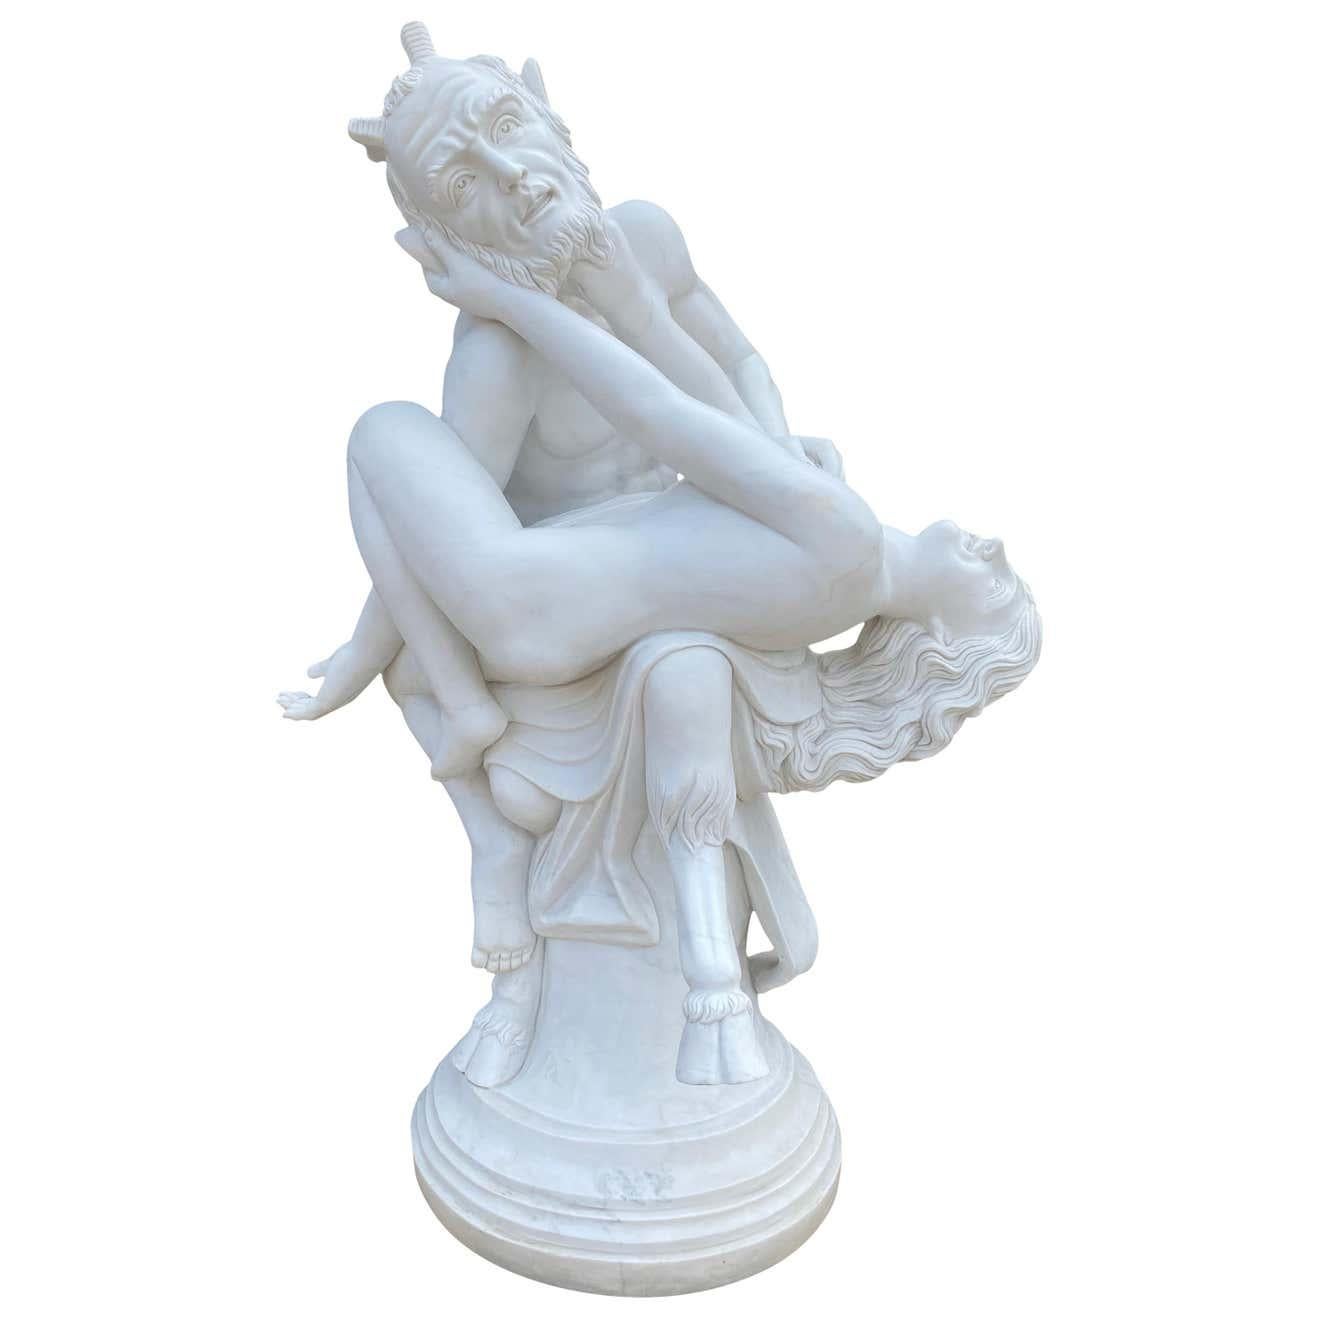 Eine schöne lebensgroße Skulptur des Pan, des antiken griechischen Gottes der Sexualität, aus dem 20. In der altgriechischen Religion und Mythologie ist Pan der Gott der Wildnis, der Hirten und Herden, der Natur der Bergwildnis, der ländlichen Musik